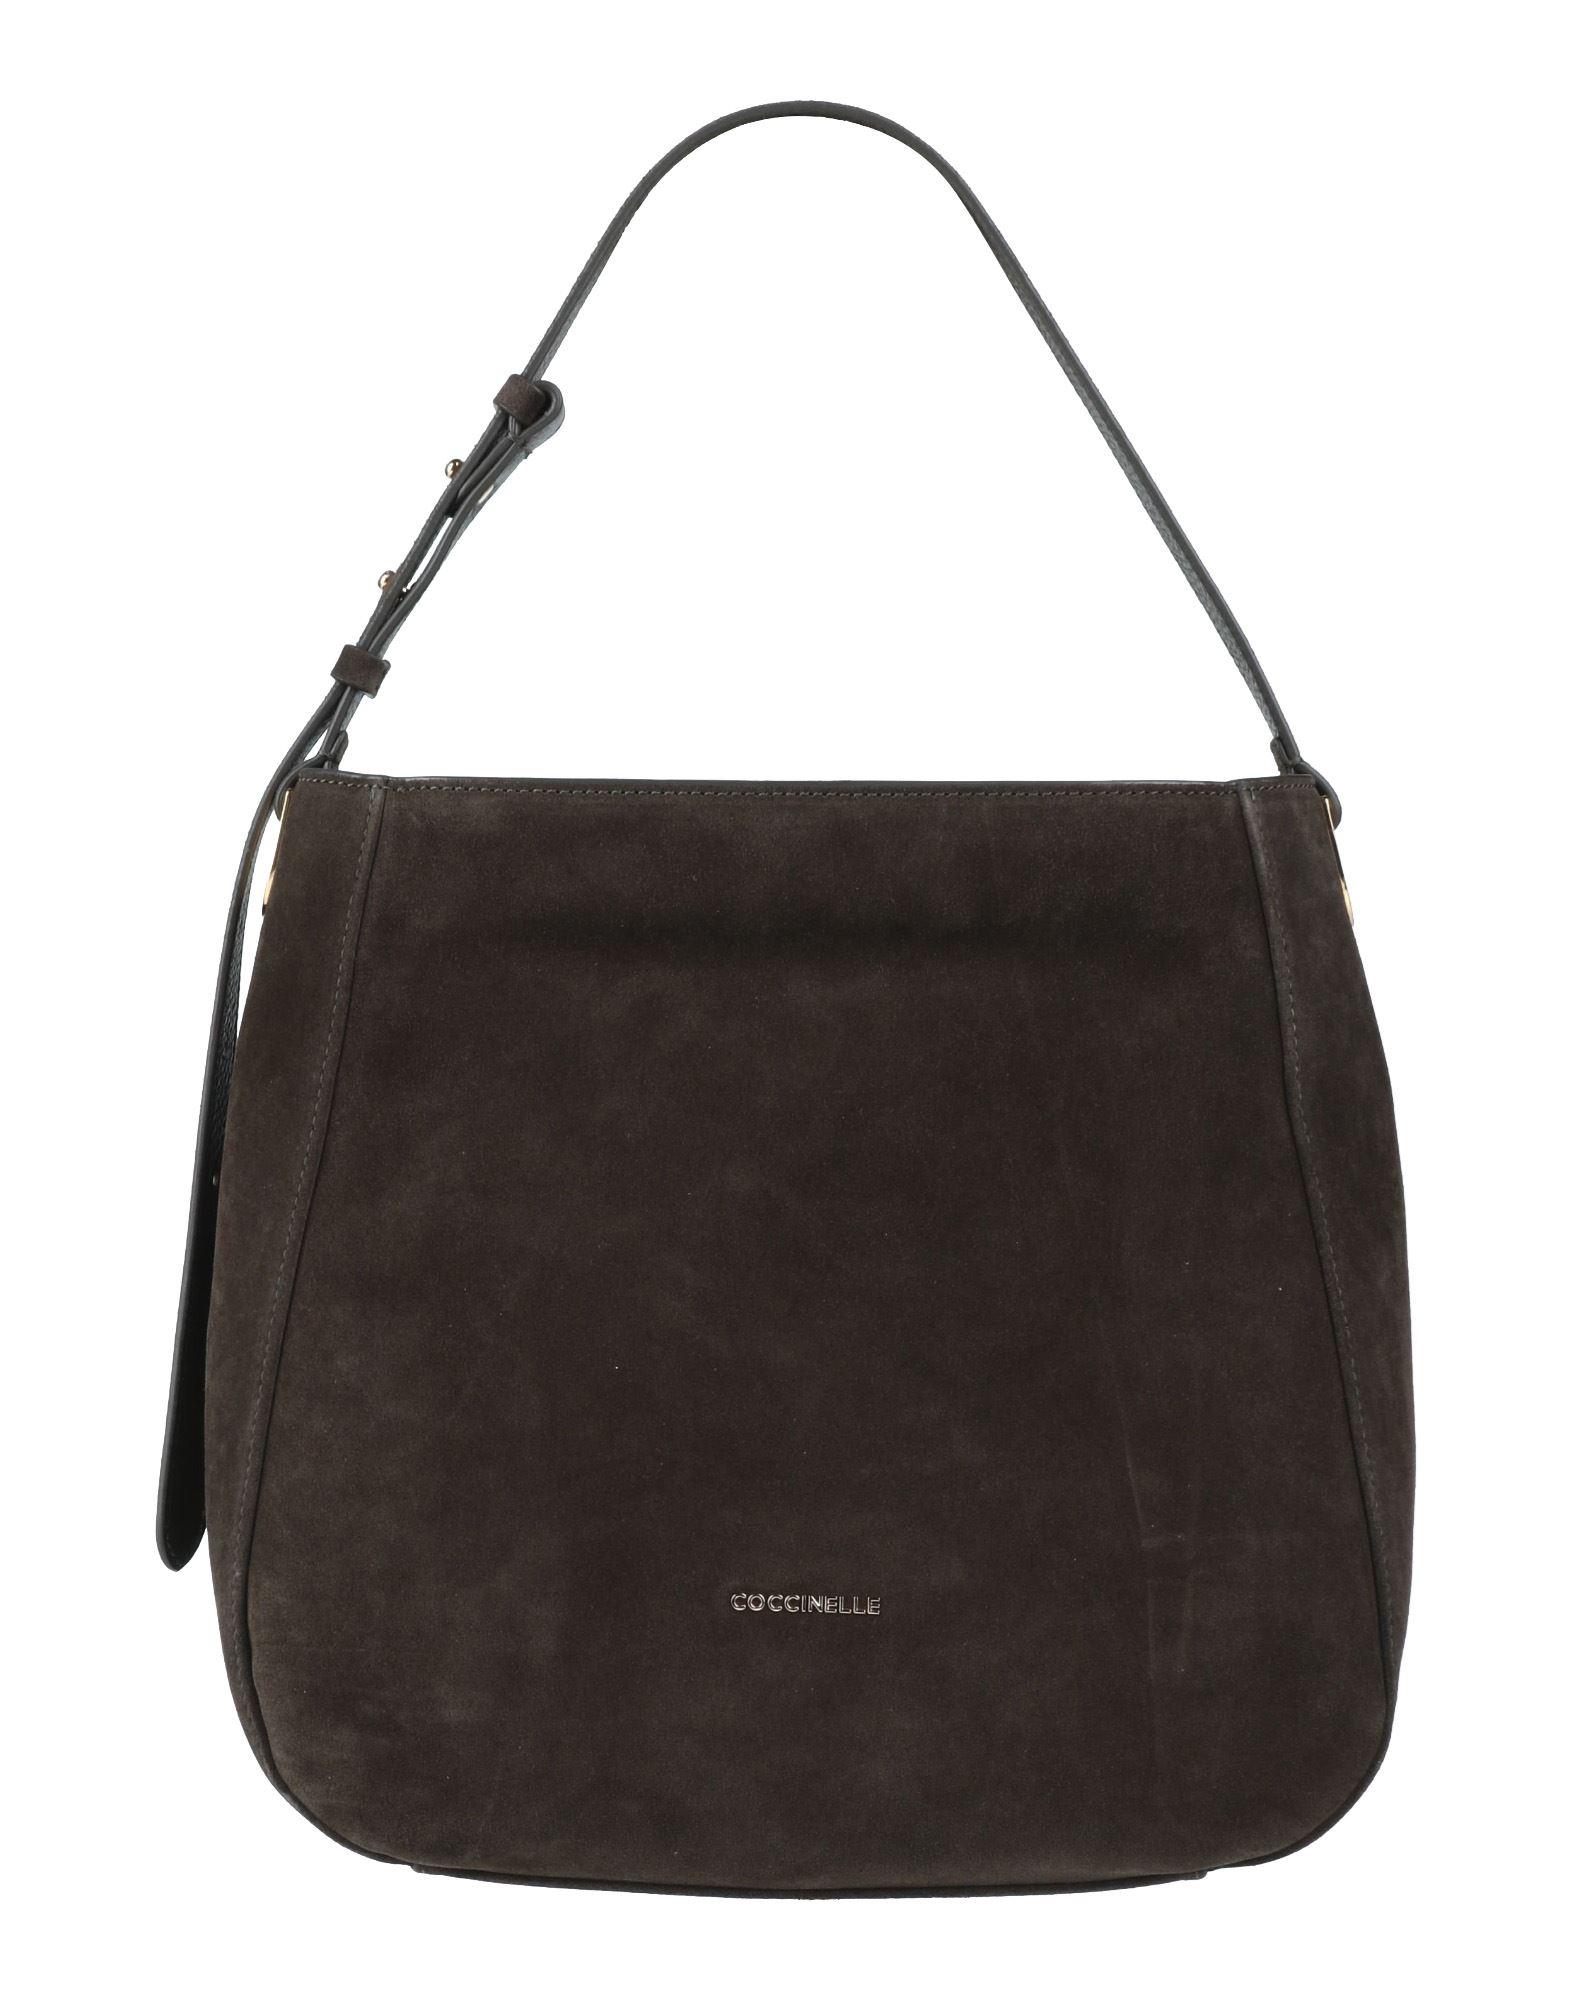 Coccinelle Shoulder Bag in Black | Lyst